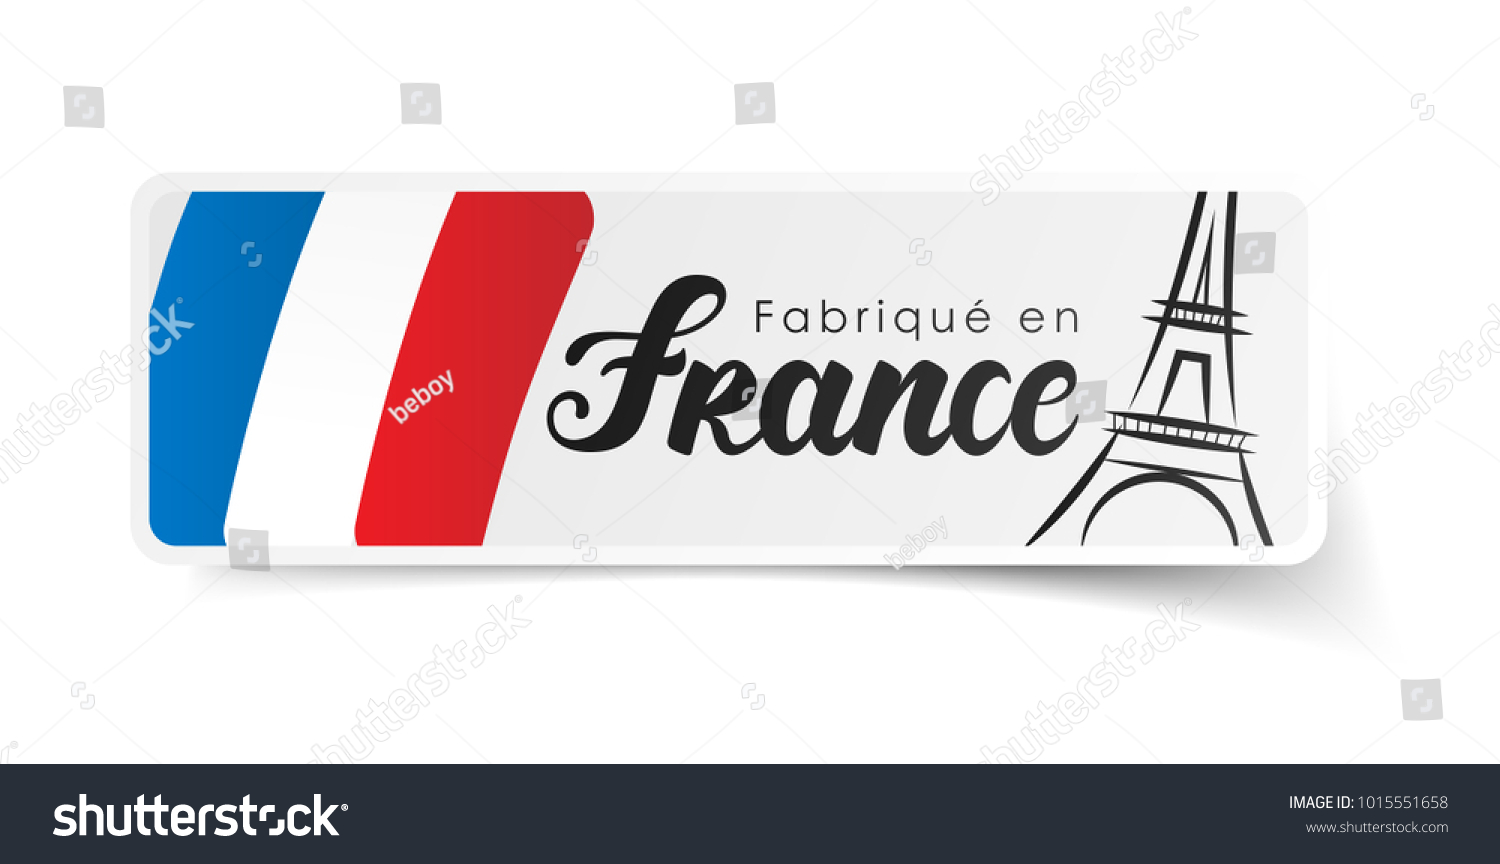 フランス語で Made In France ファブリケエンフランス のベクター画像素材 ロイヤリティフリー